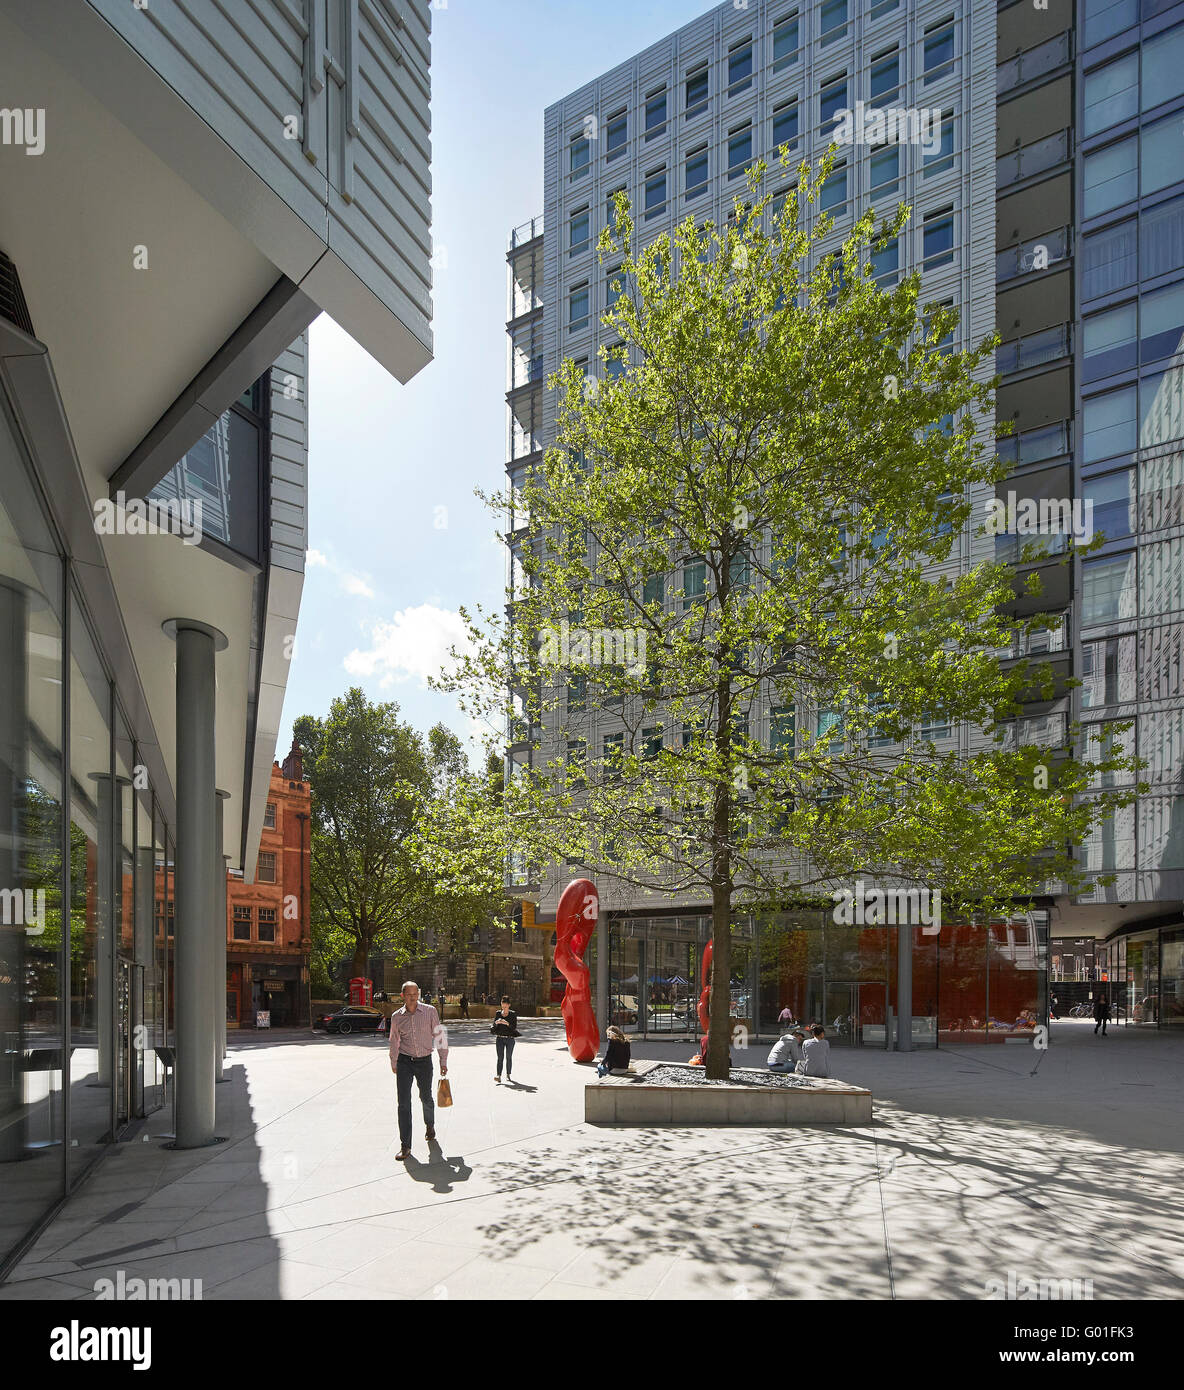 Cour publique éclairée. Central Saint Giles, London, Royaume-Uni. Architecte : Renzo Piano Building Workshop, 2015. Banque D'Images